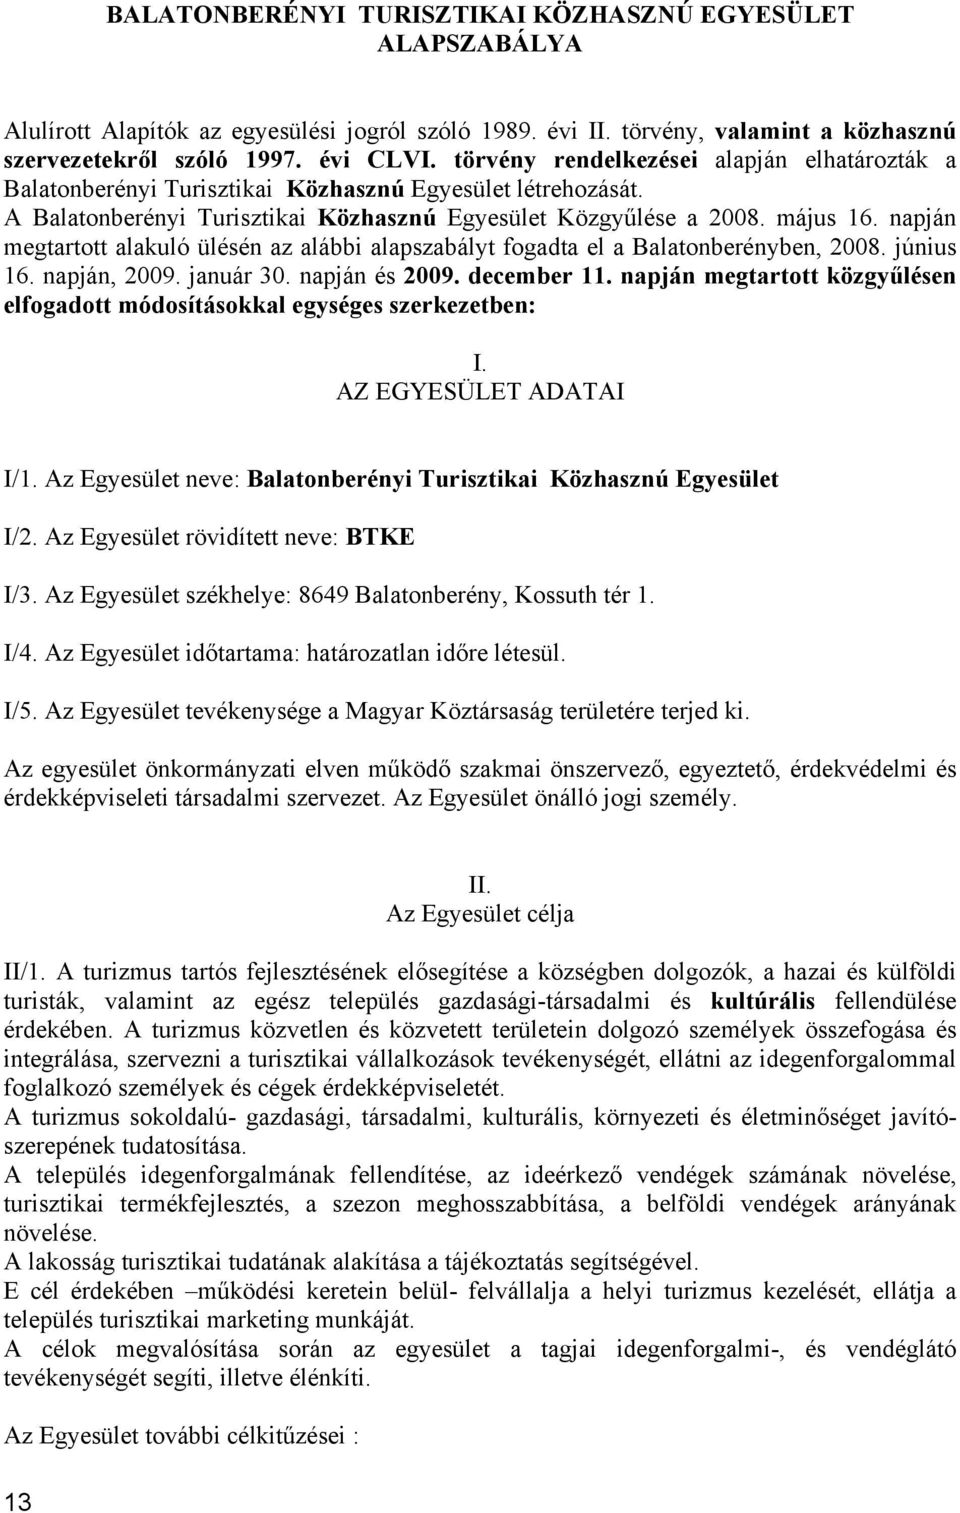 napján megtartott alakuló ülésén az alábbi alapszabályt fogadta el a Balatonberényben, 2008. június 16. napján, 2009. január 30. napján és 2009. december 11.